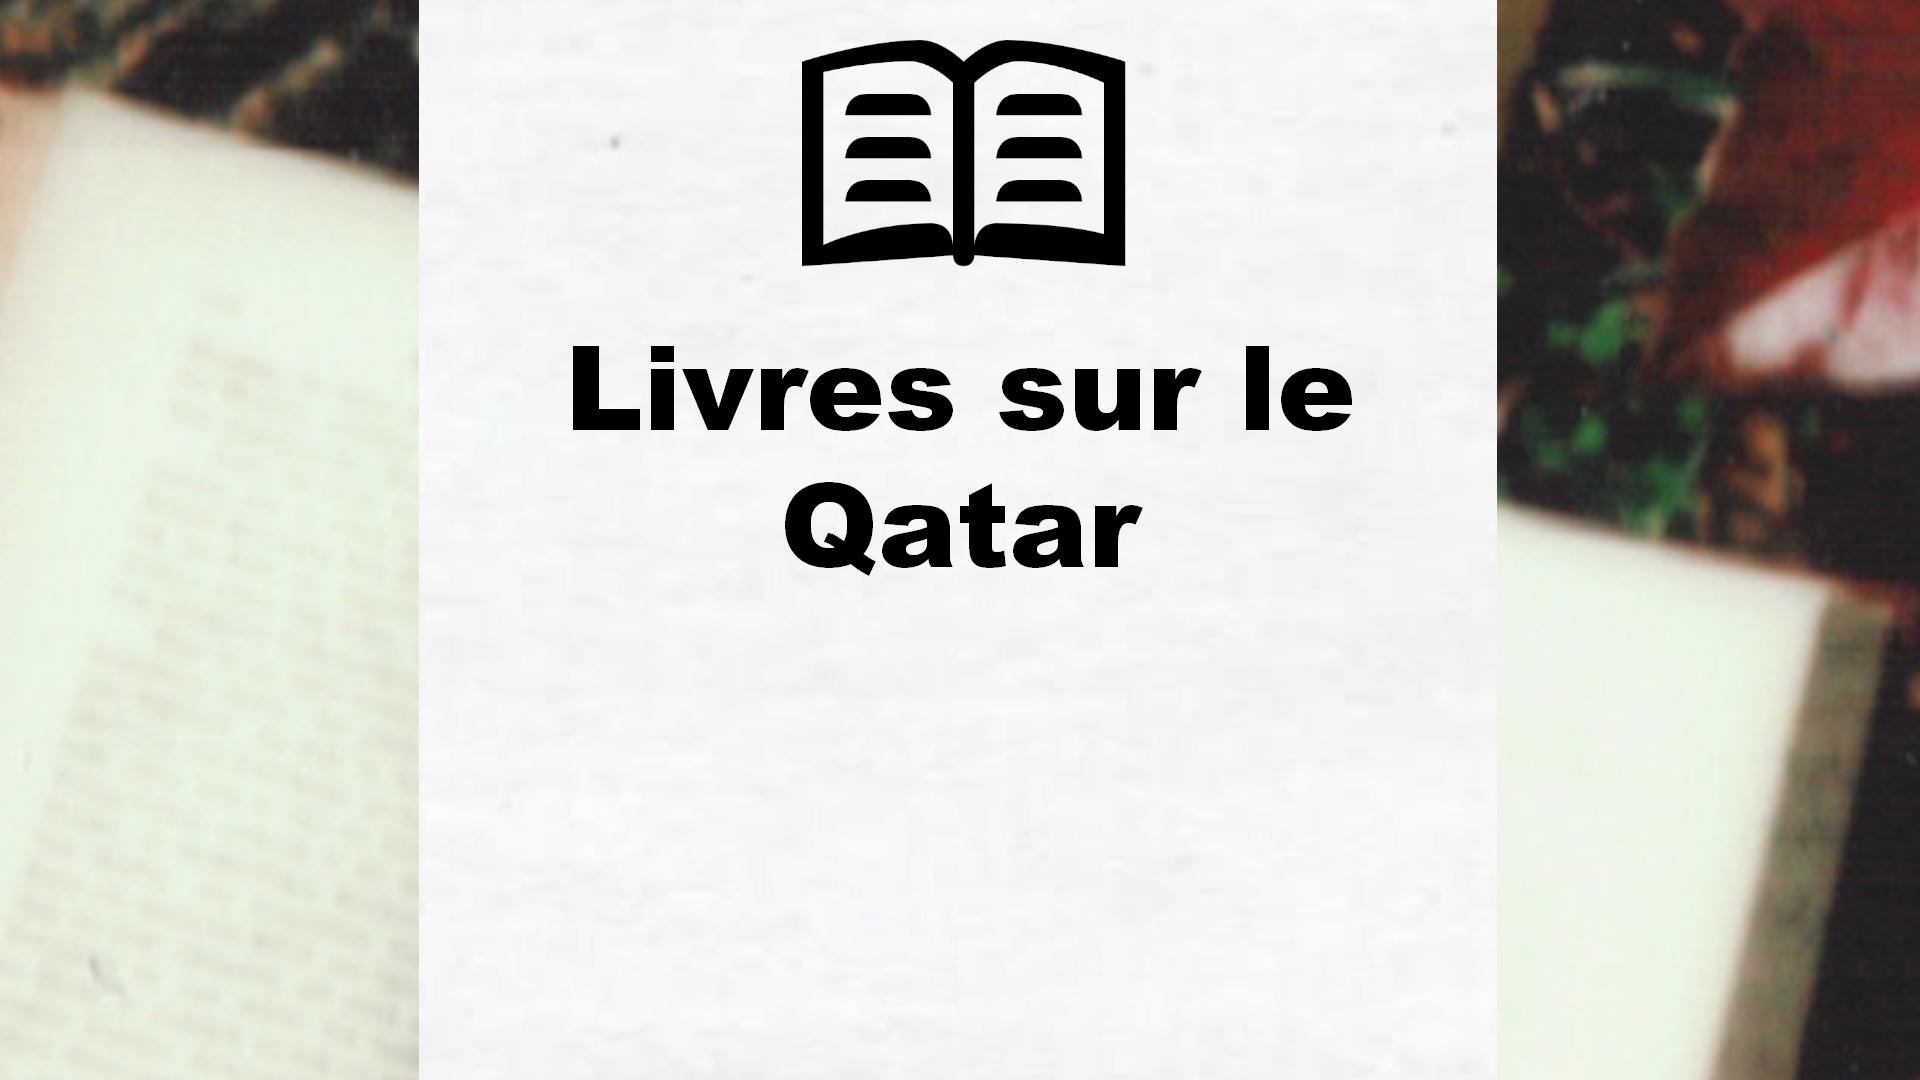 Livres sur le Qatar